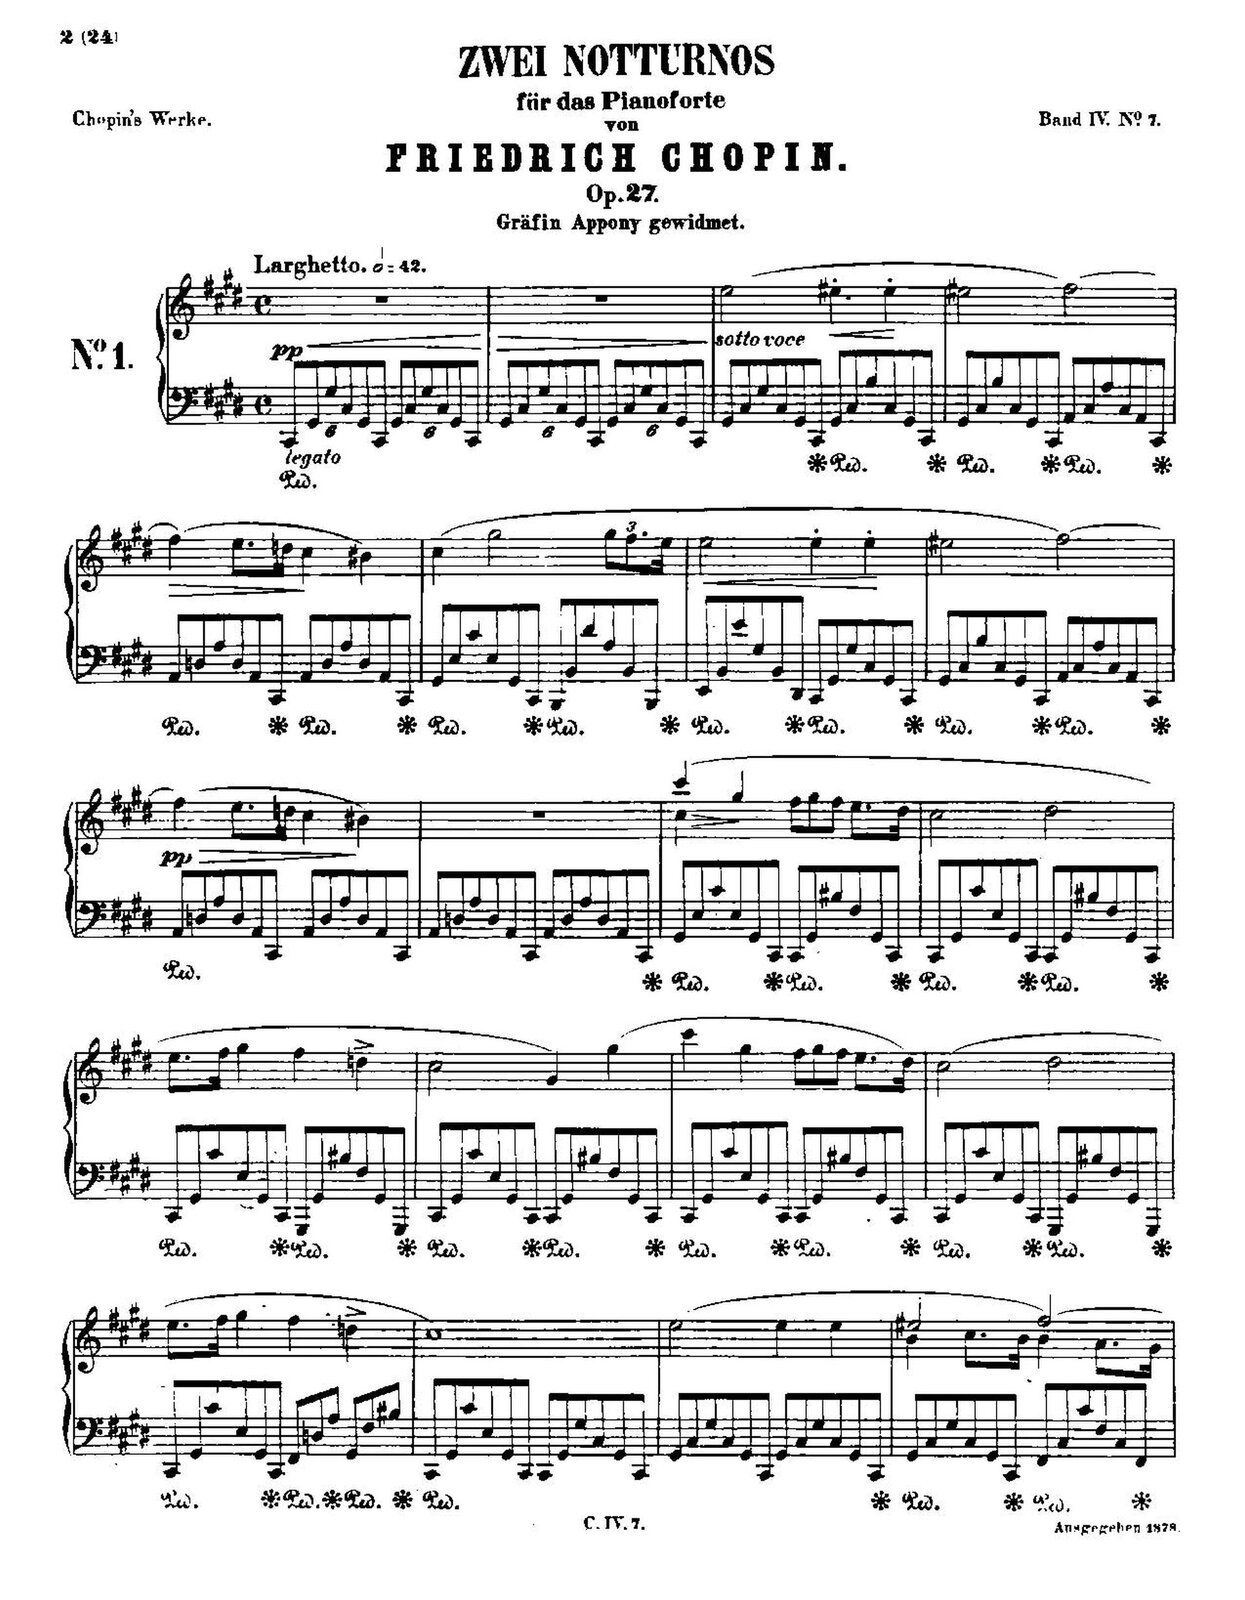 Ilustracja przedstawia zapis nutowy części utworu „Nokturn cis-moll” op. 27 Chopina. Nad nutami jest tytuł, imię oraz nazwisko autora.